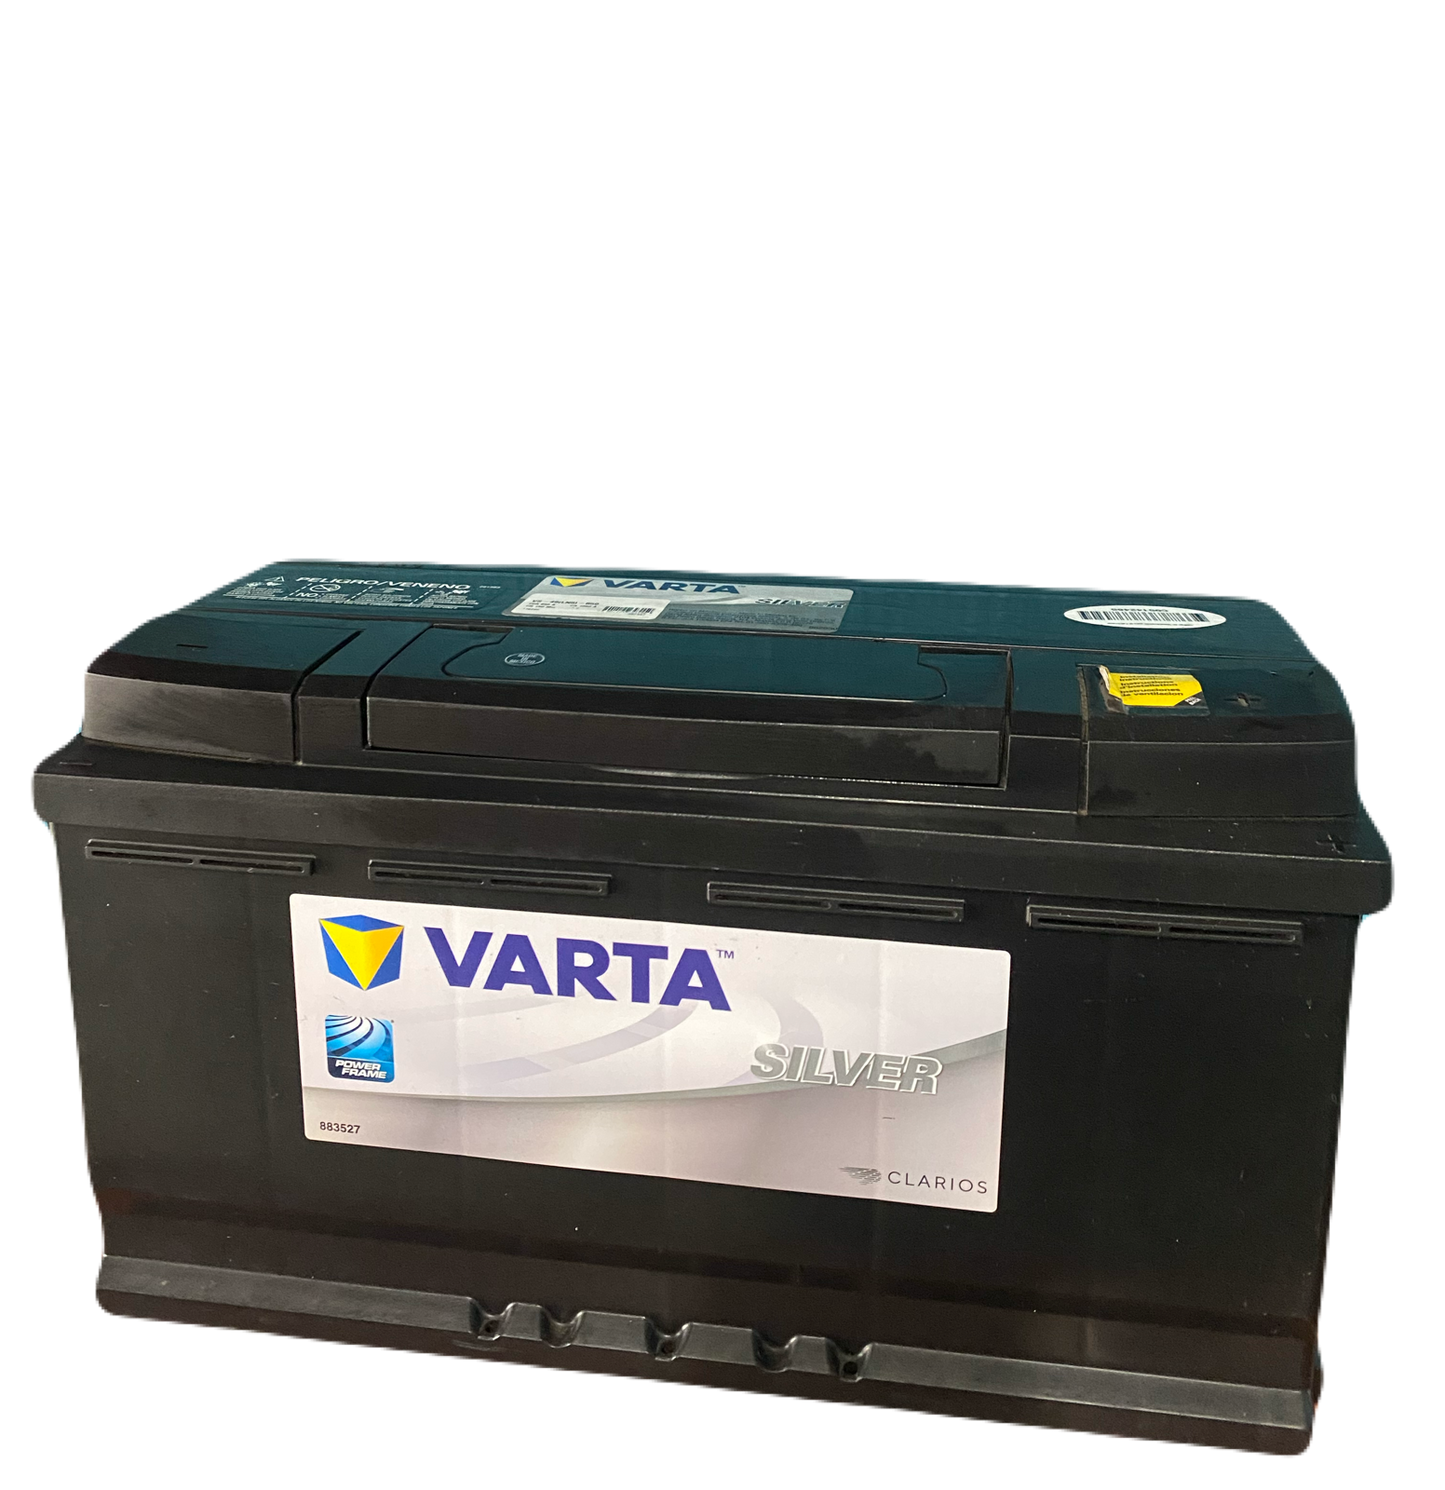 Varta 49-850 Battery